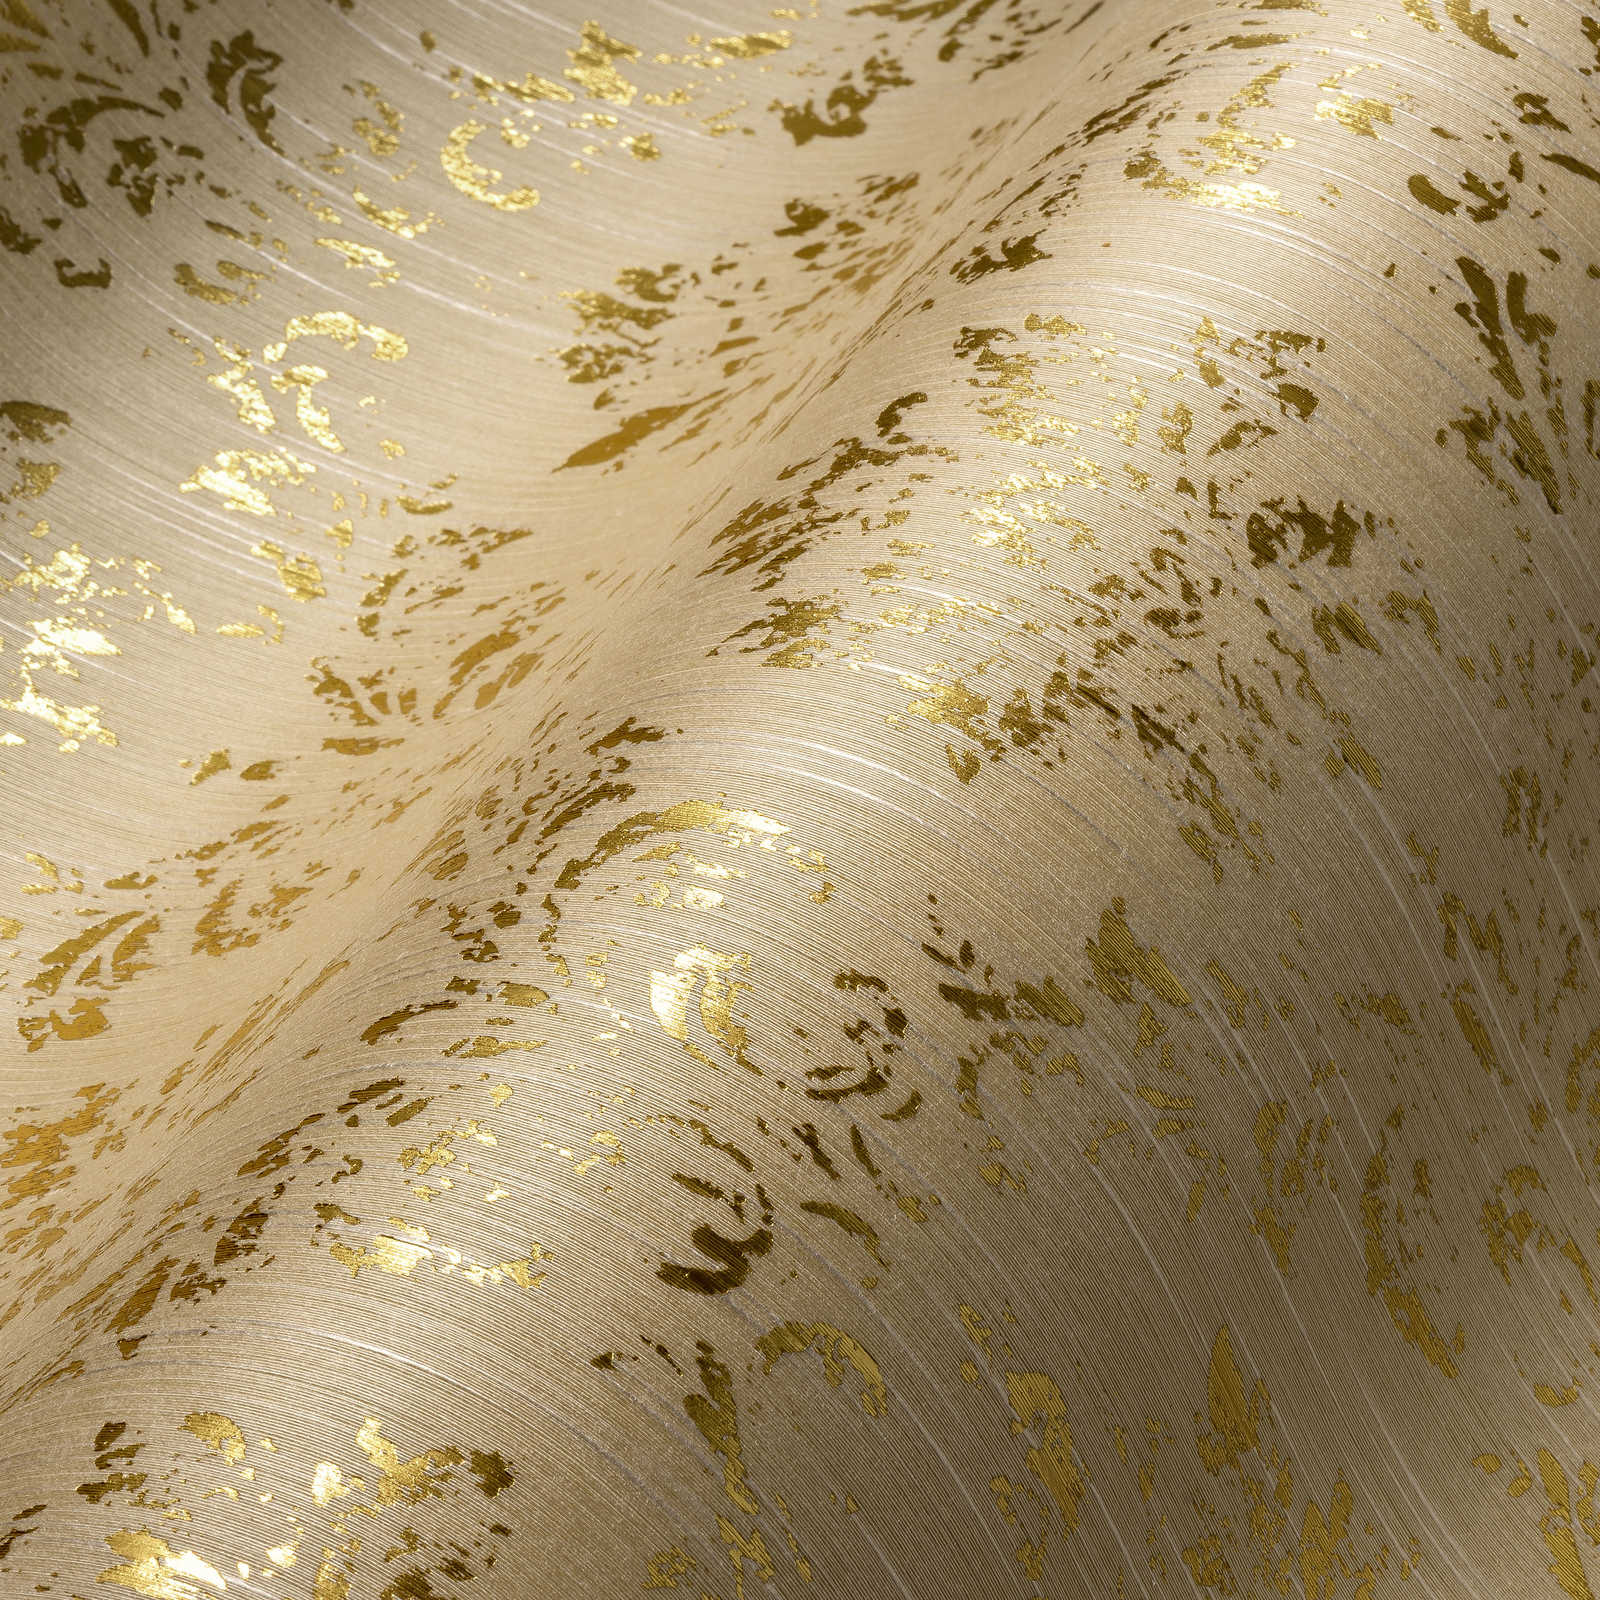             Papier peint avec ornements dorés, aspect usé - crème, or
        